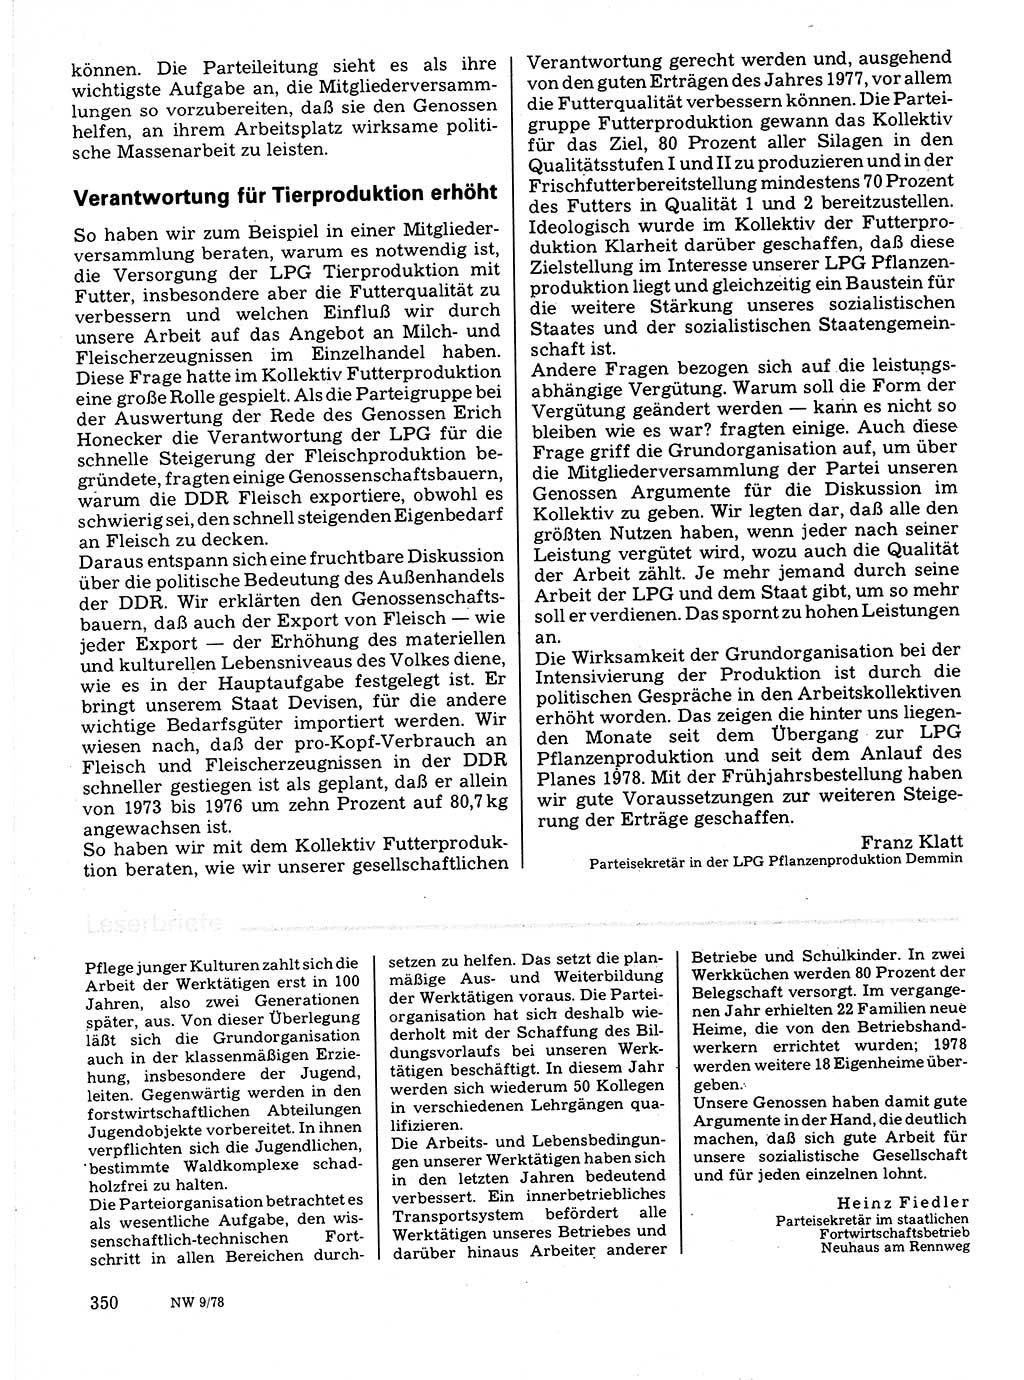 Neuer Weg (NW), Organ des Zentralkomitees (ZK) der SED (Sozialistische Einheitspartei Deutschlands) für Fragen des Parteilebens, 33. Jahrgang [Deutsche Demokratische Republik (DDR)] 1978, Seite 350 (NW ZK SED DDR 1978, S. 350)